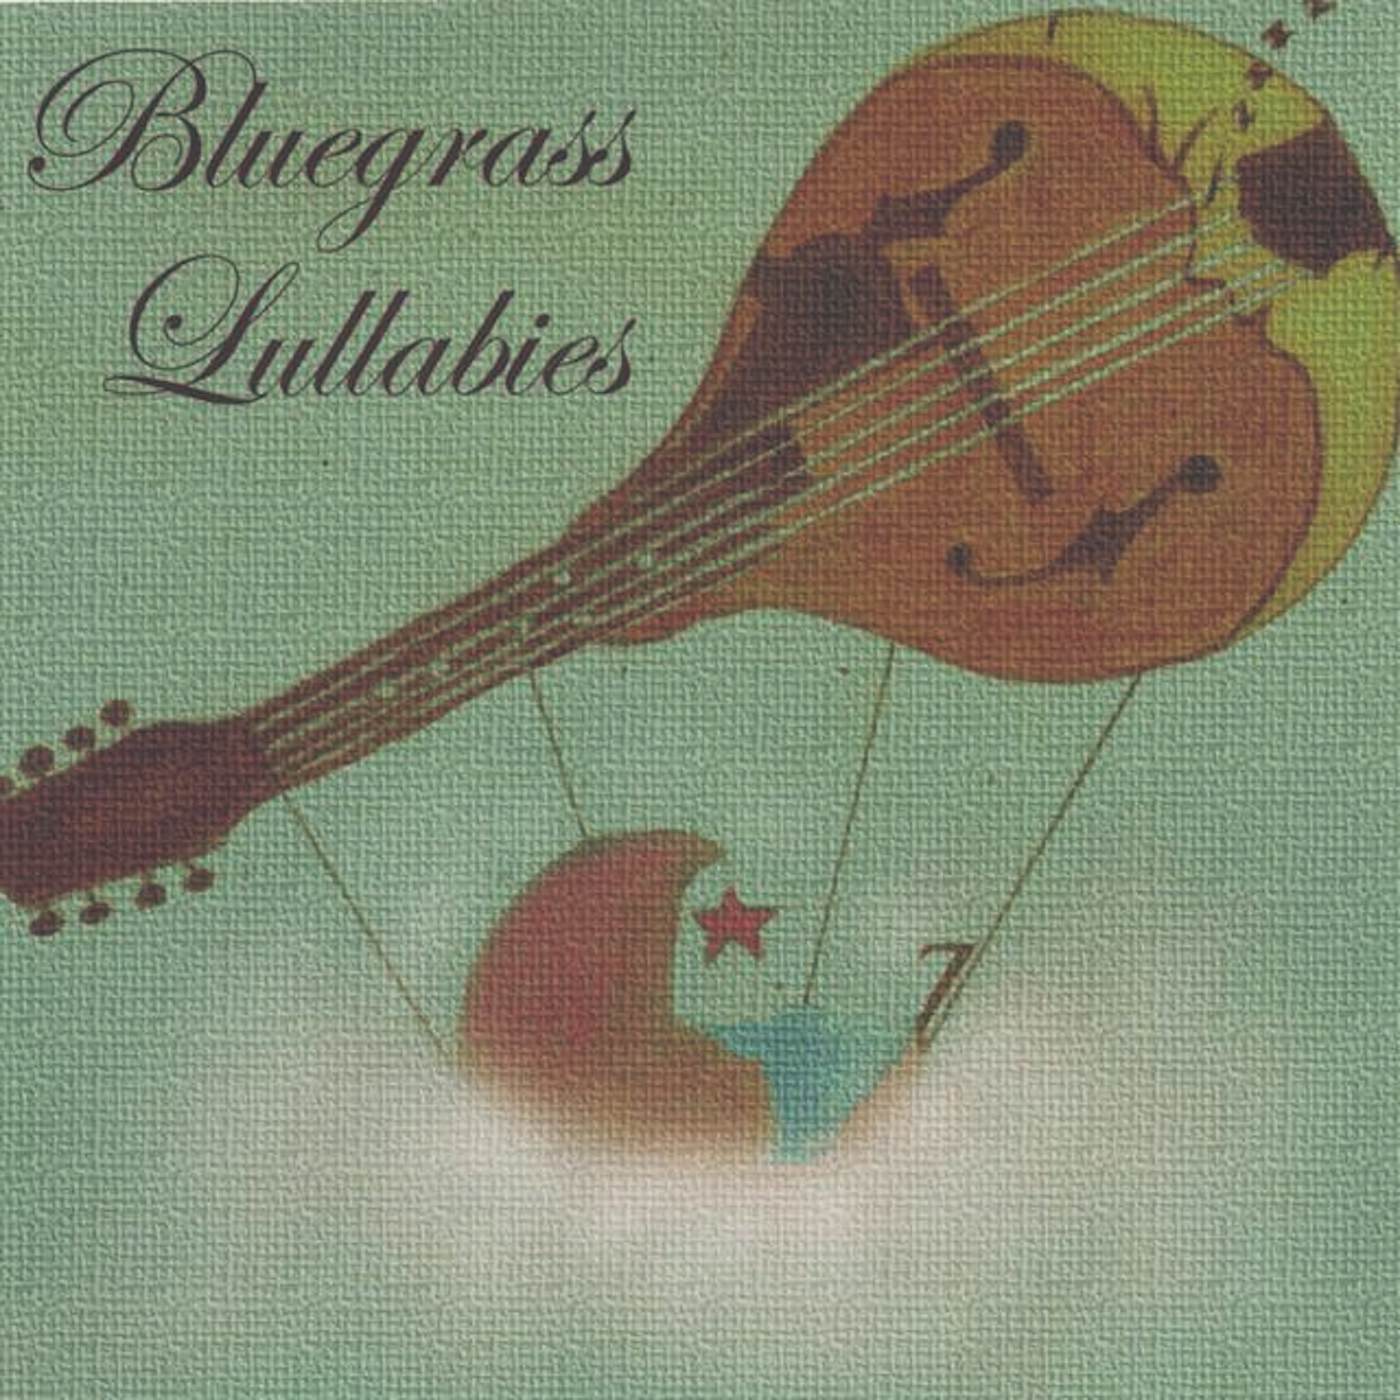 Bluegrass Lullabies